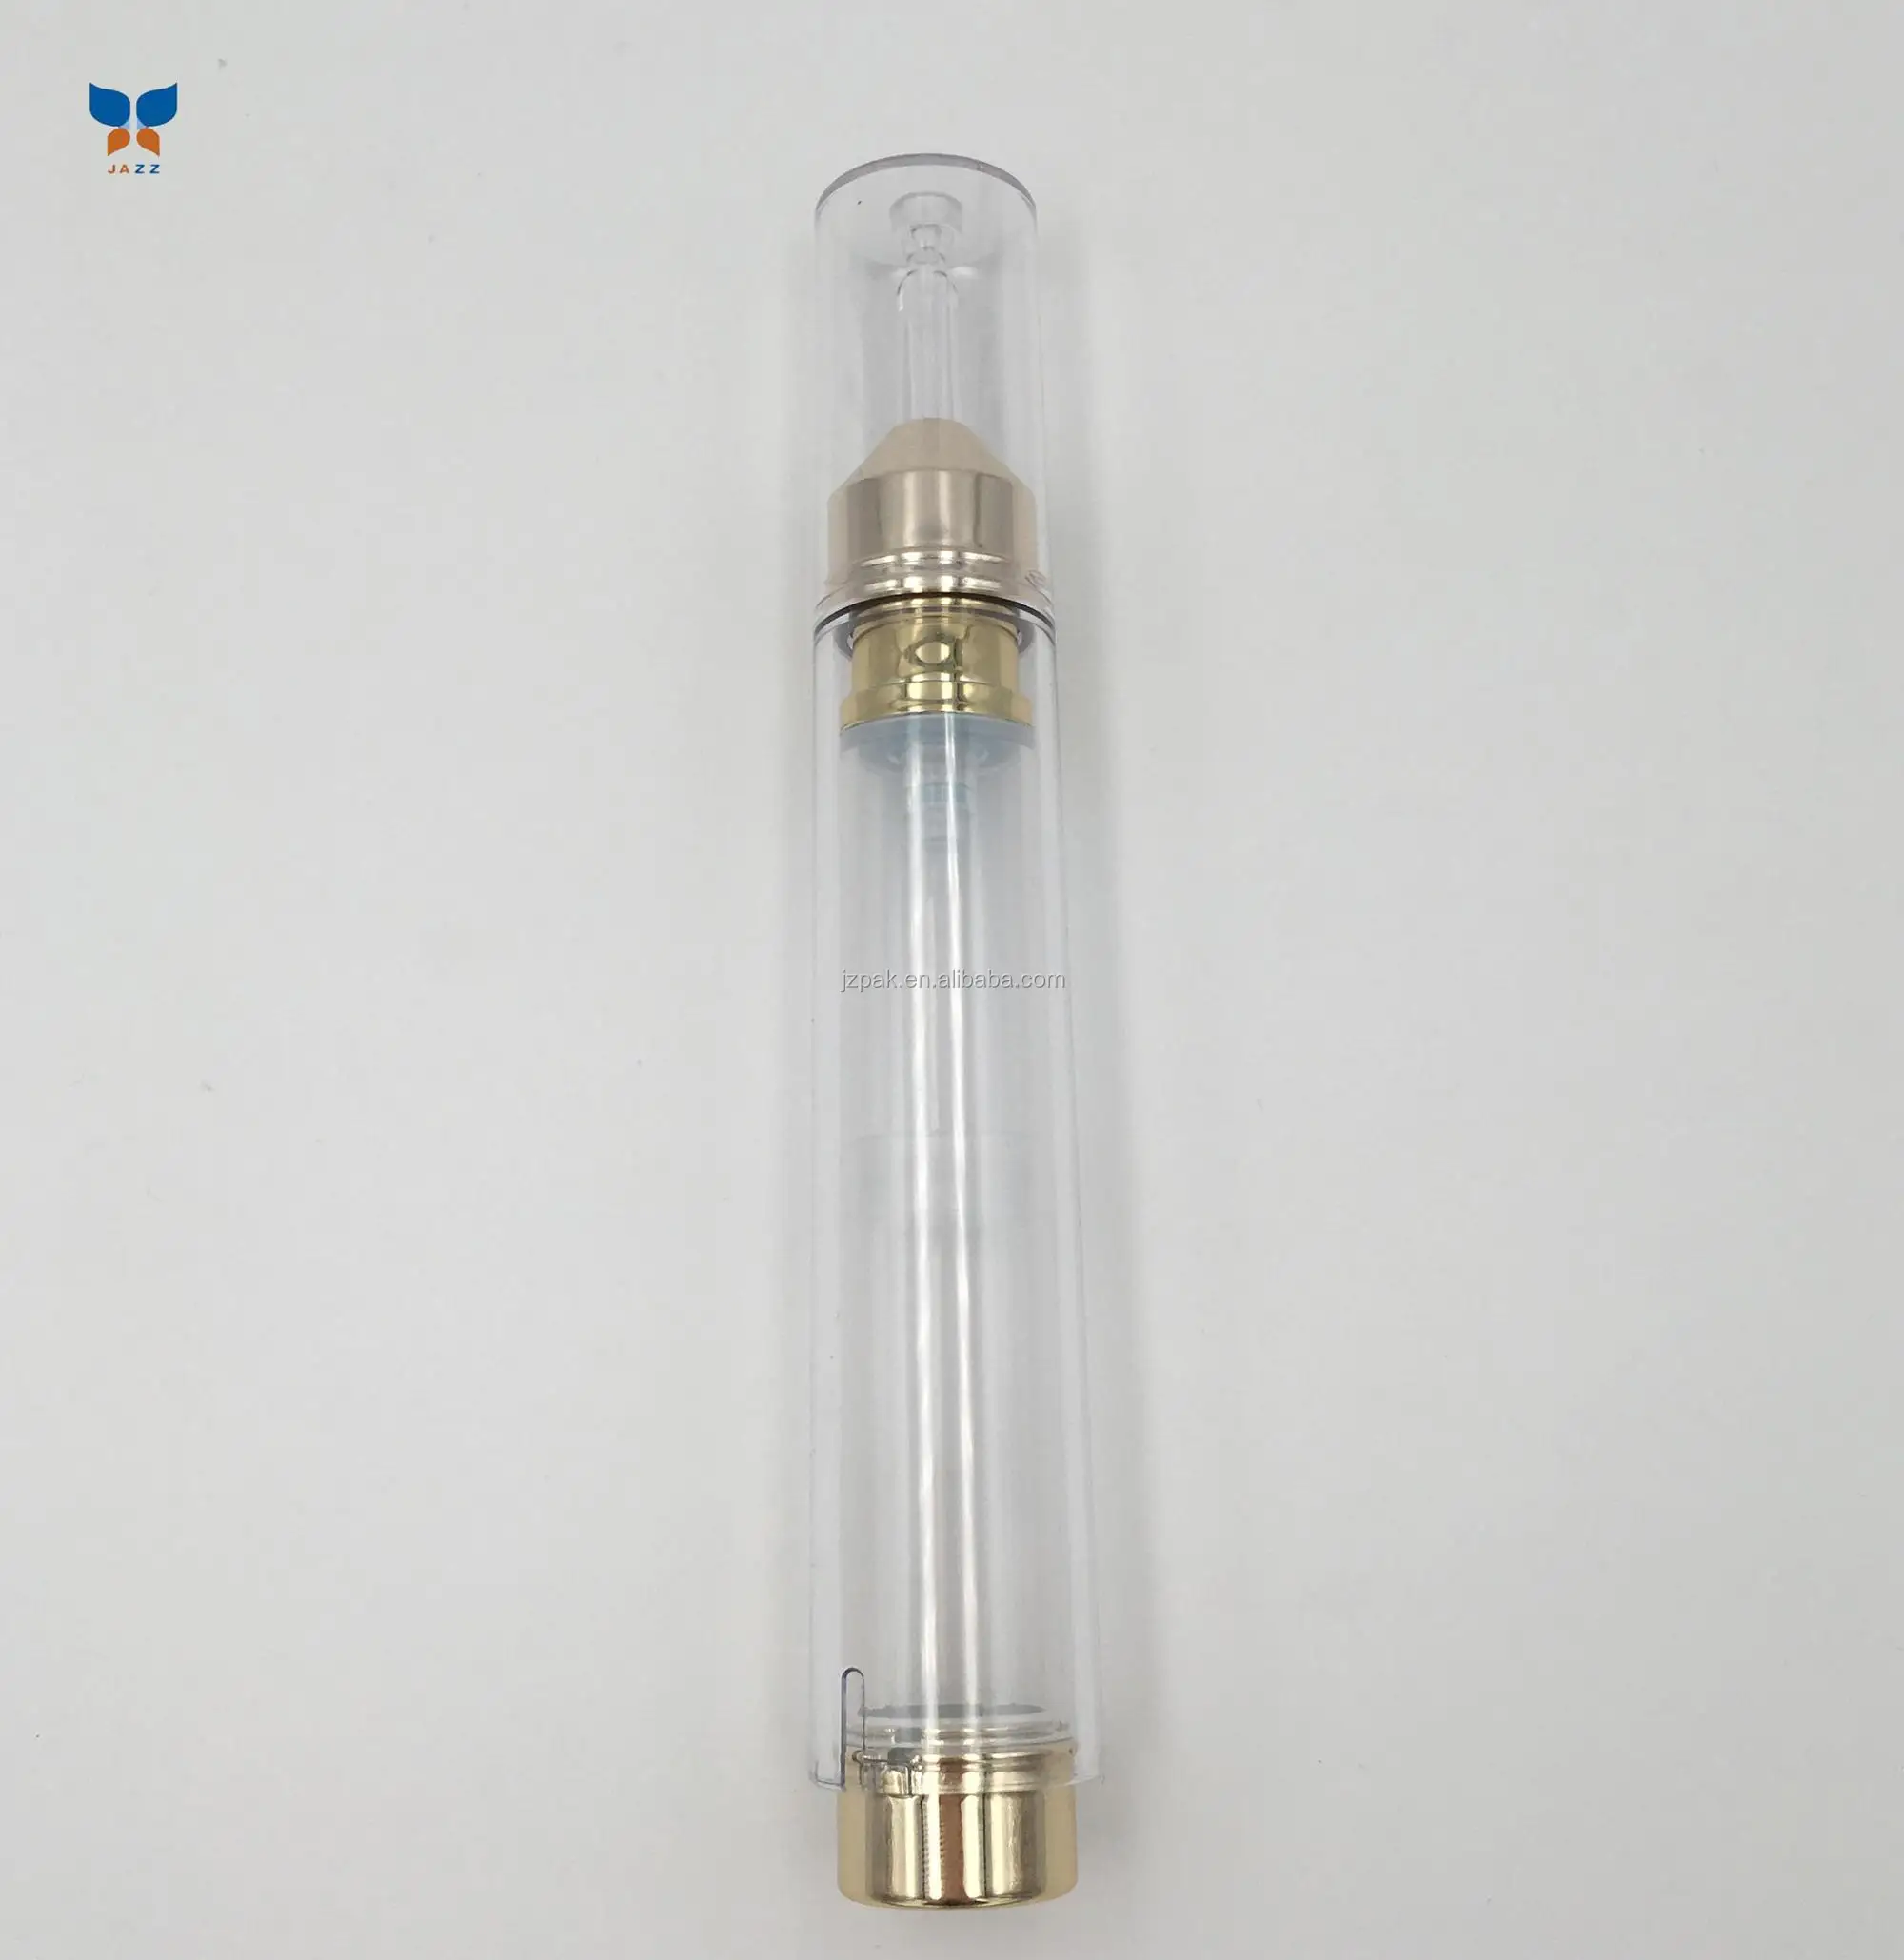 Jazz 15ml new design2018 syringe shape airless bottle for eye cream injection bottle